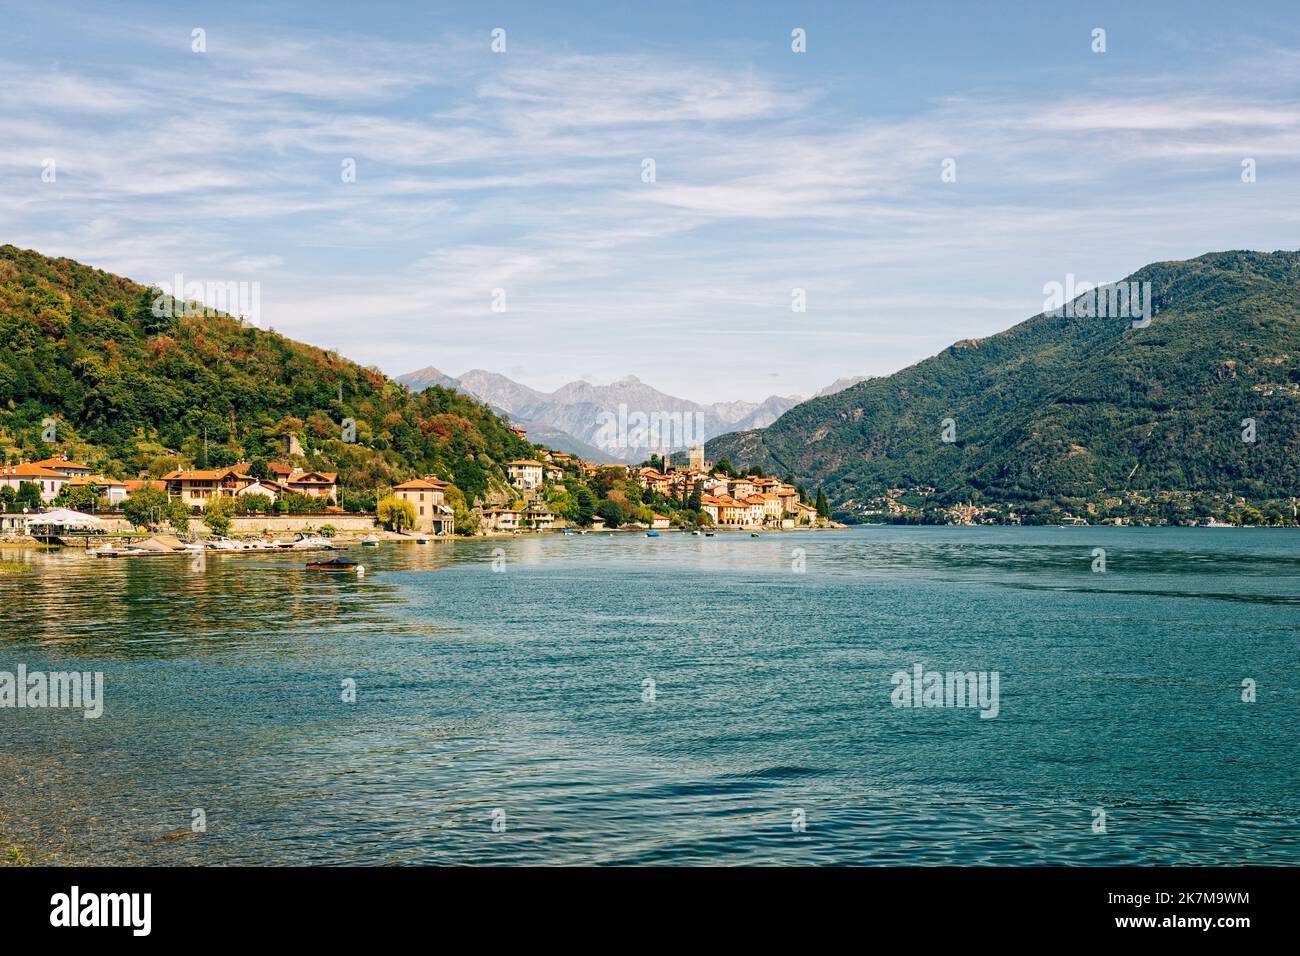 Santa Maria Rezzonico, western lakeside of Lago di Como, view from Santa Maria, alpine mountains in background Stock Photo